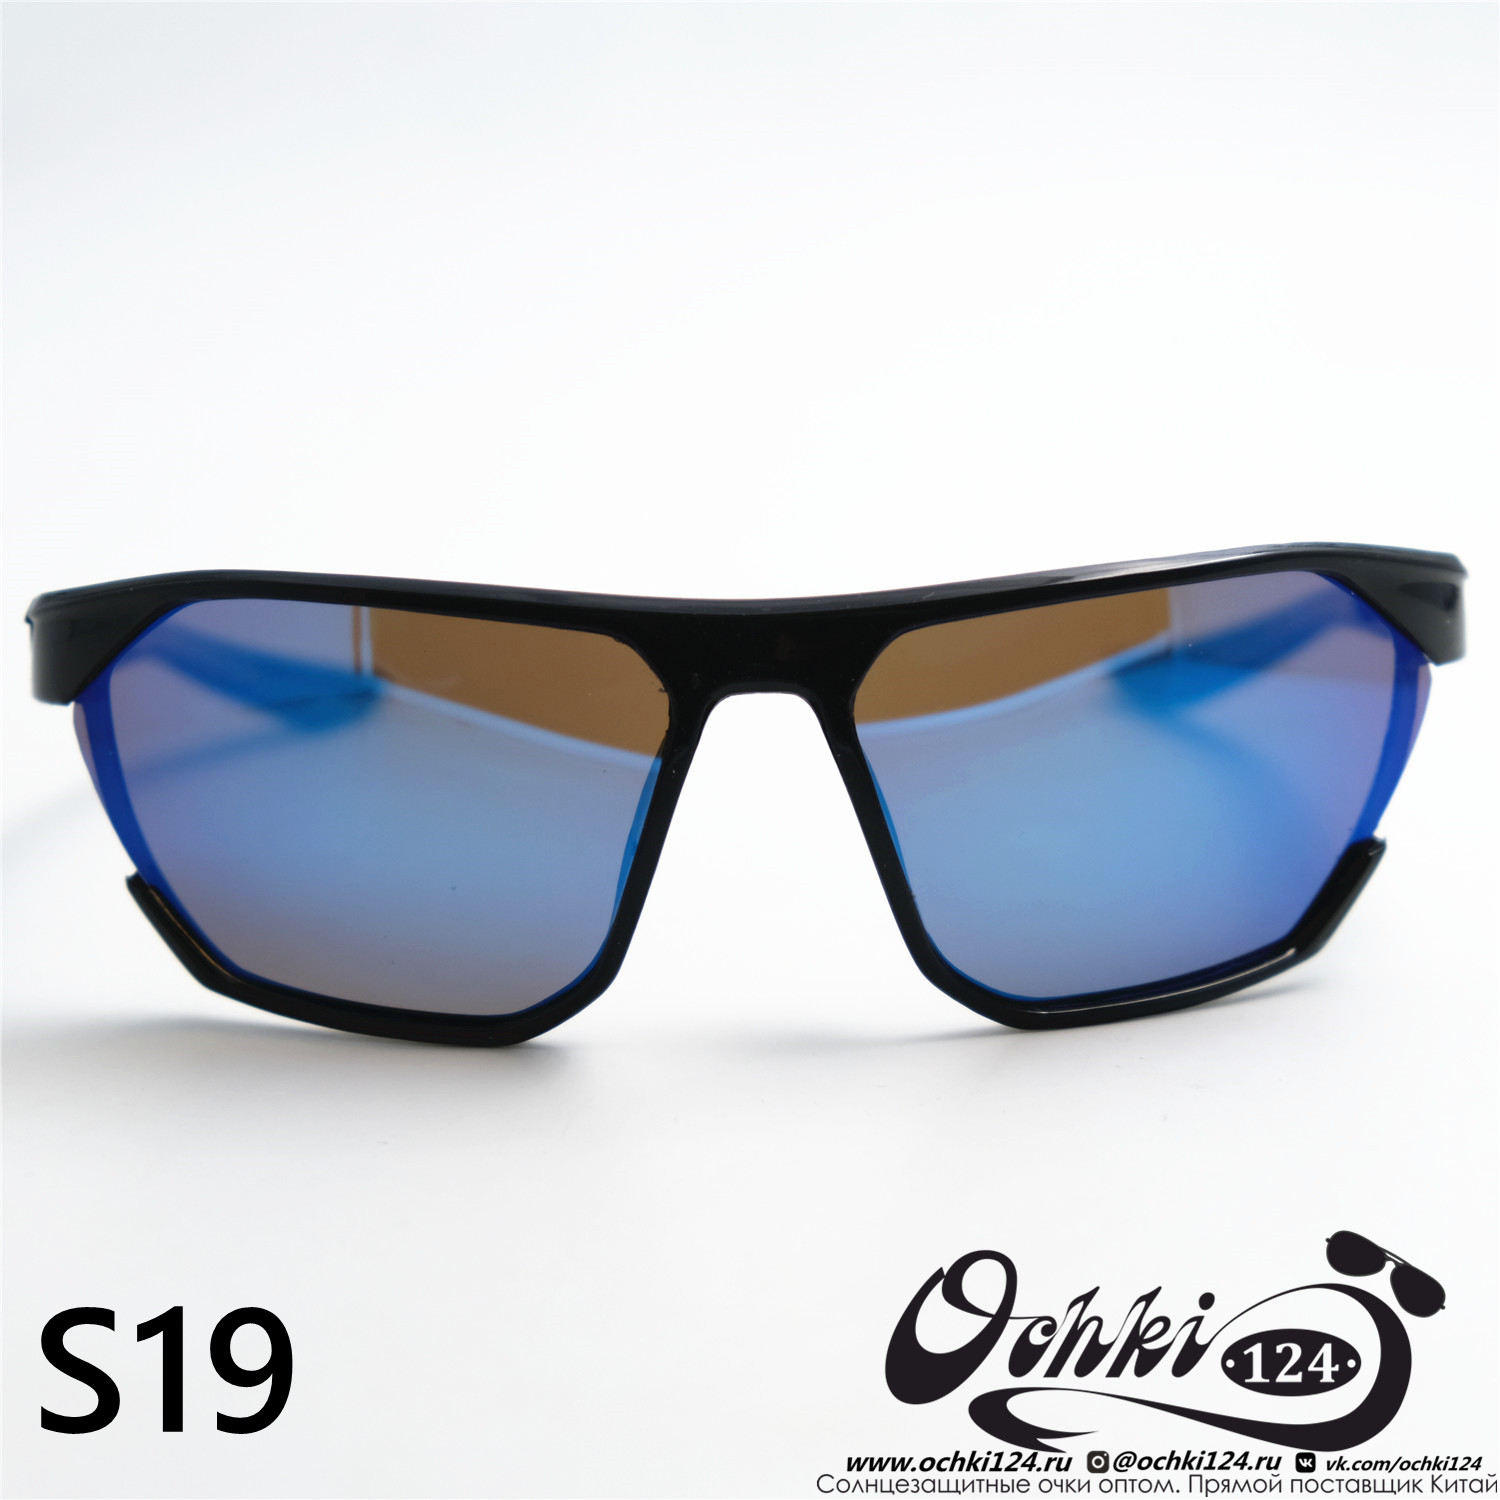  Солнцезащитные очки картинка 2023 Мужские Спорт Materice S19-C6 